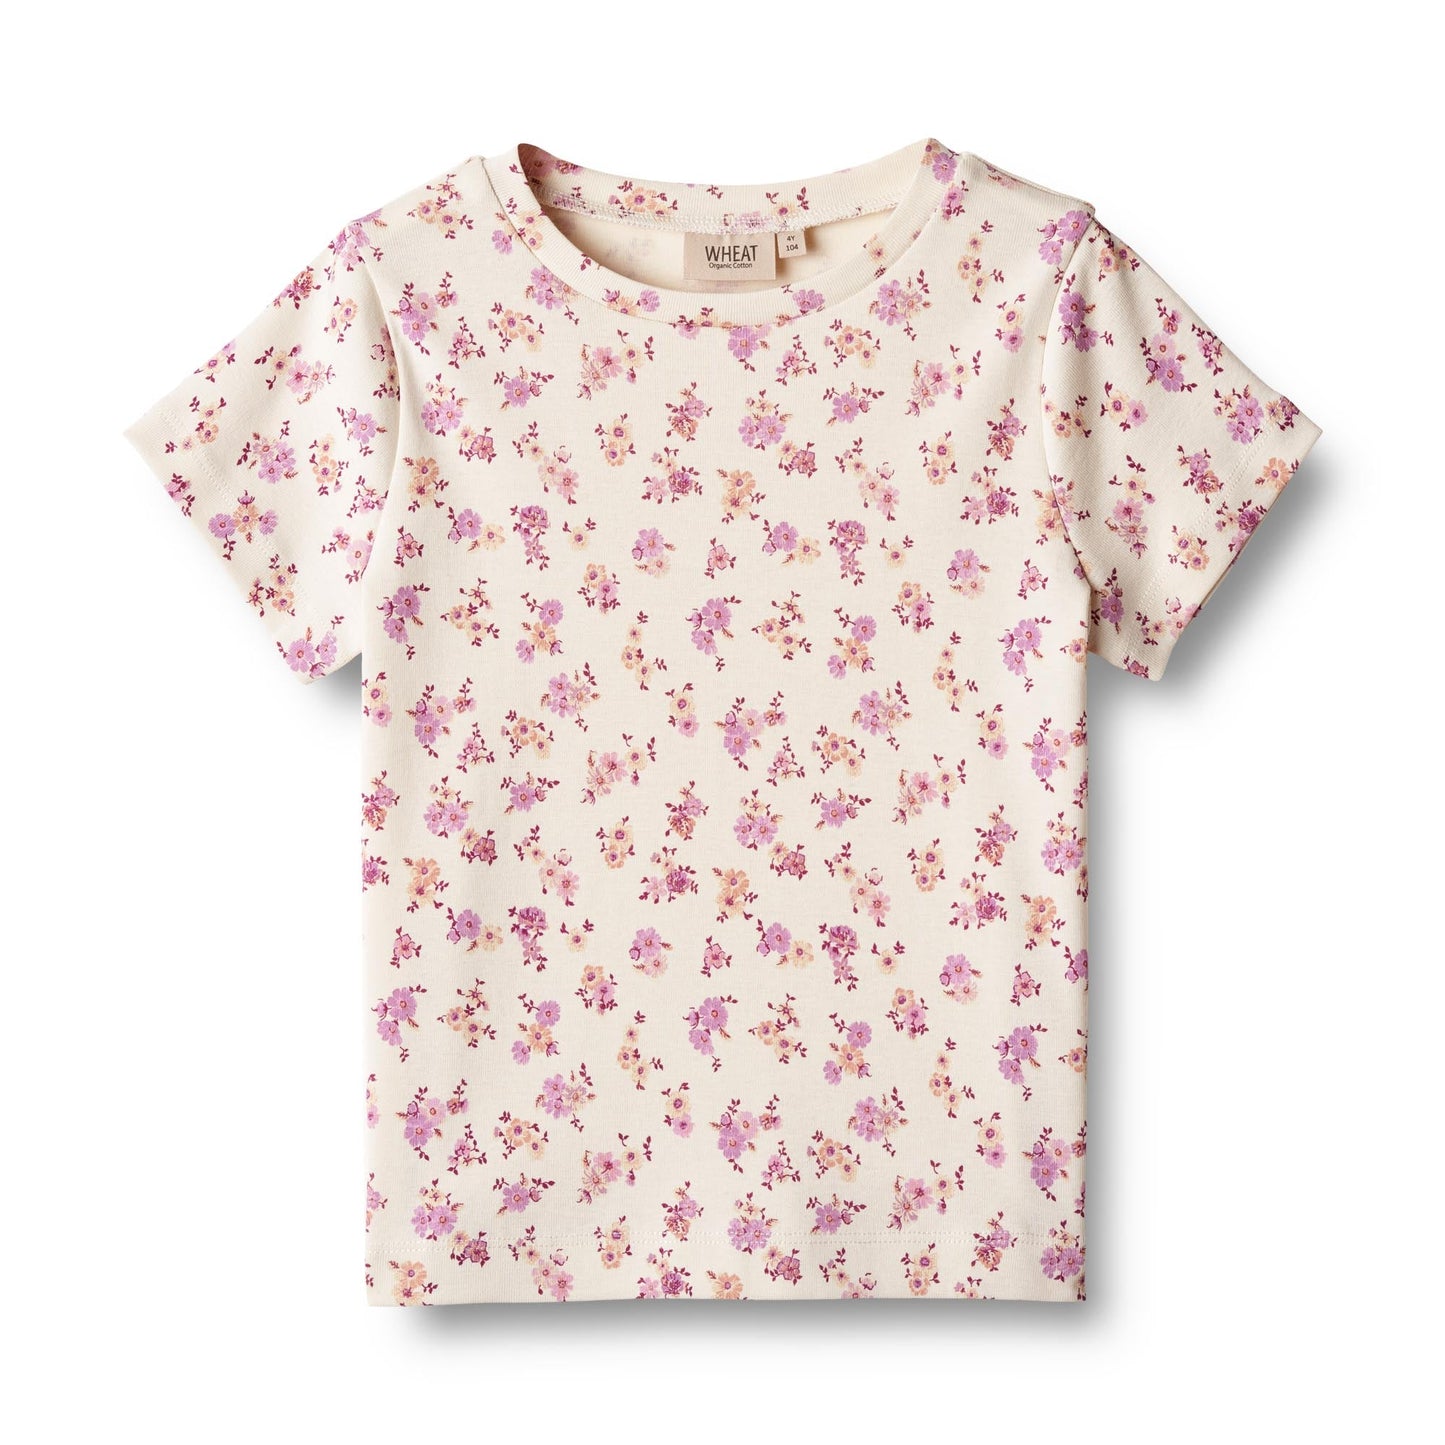 Wheat 'Manna' Children's S/S T-Shirt - Shell Flowers